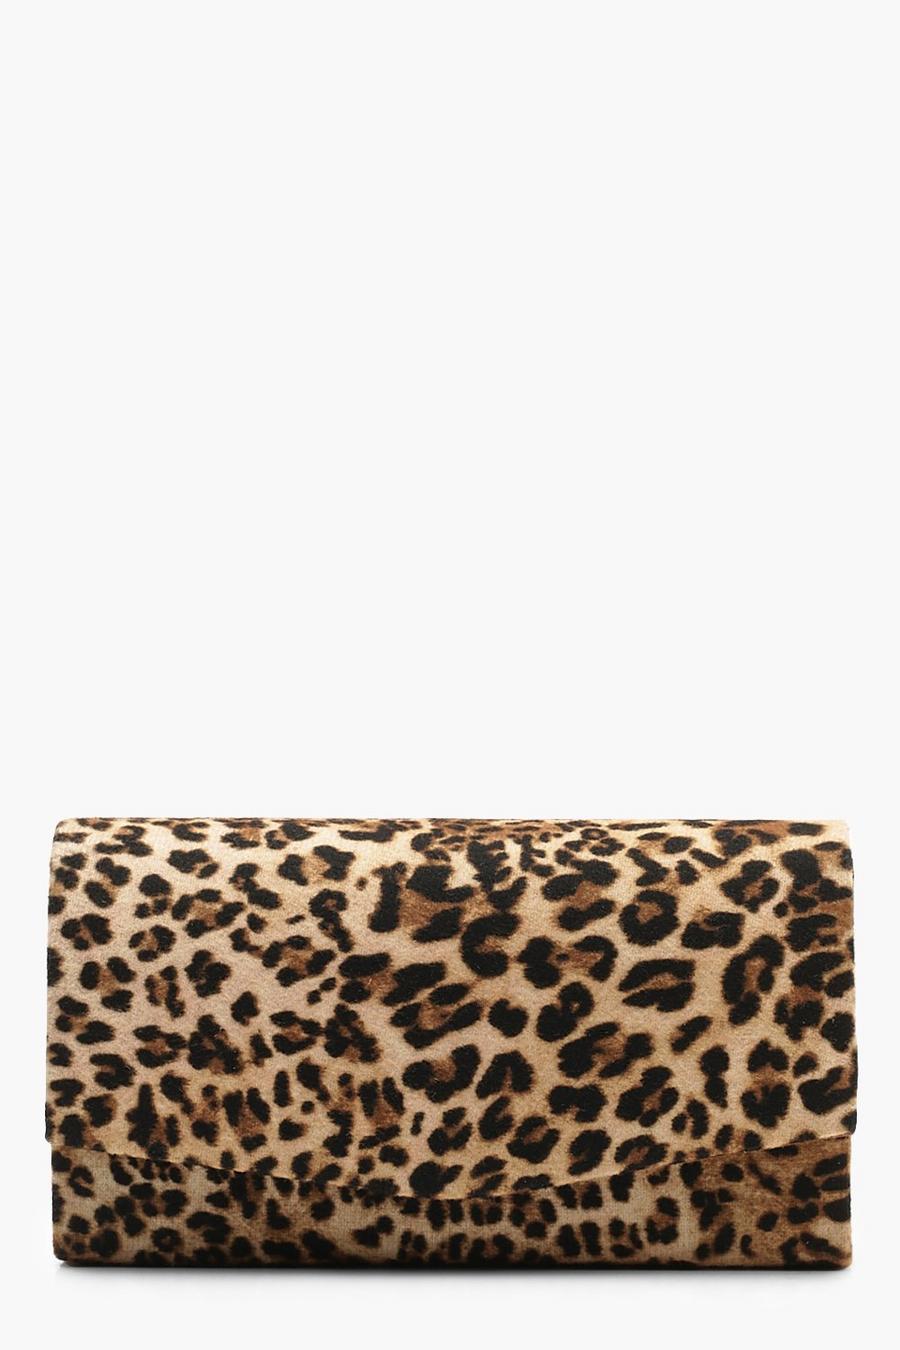 Strukturierte Leopardenprint Clutch-Tasche mit Kette, Naturfarben beige